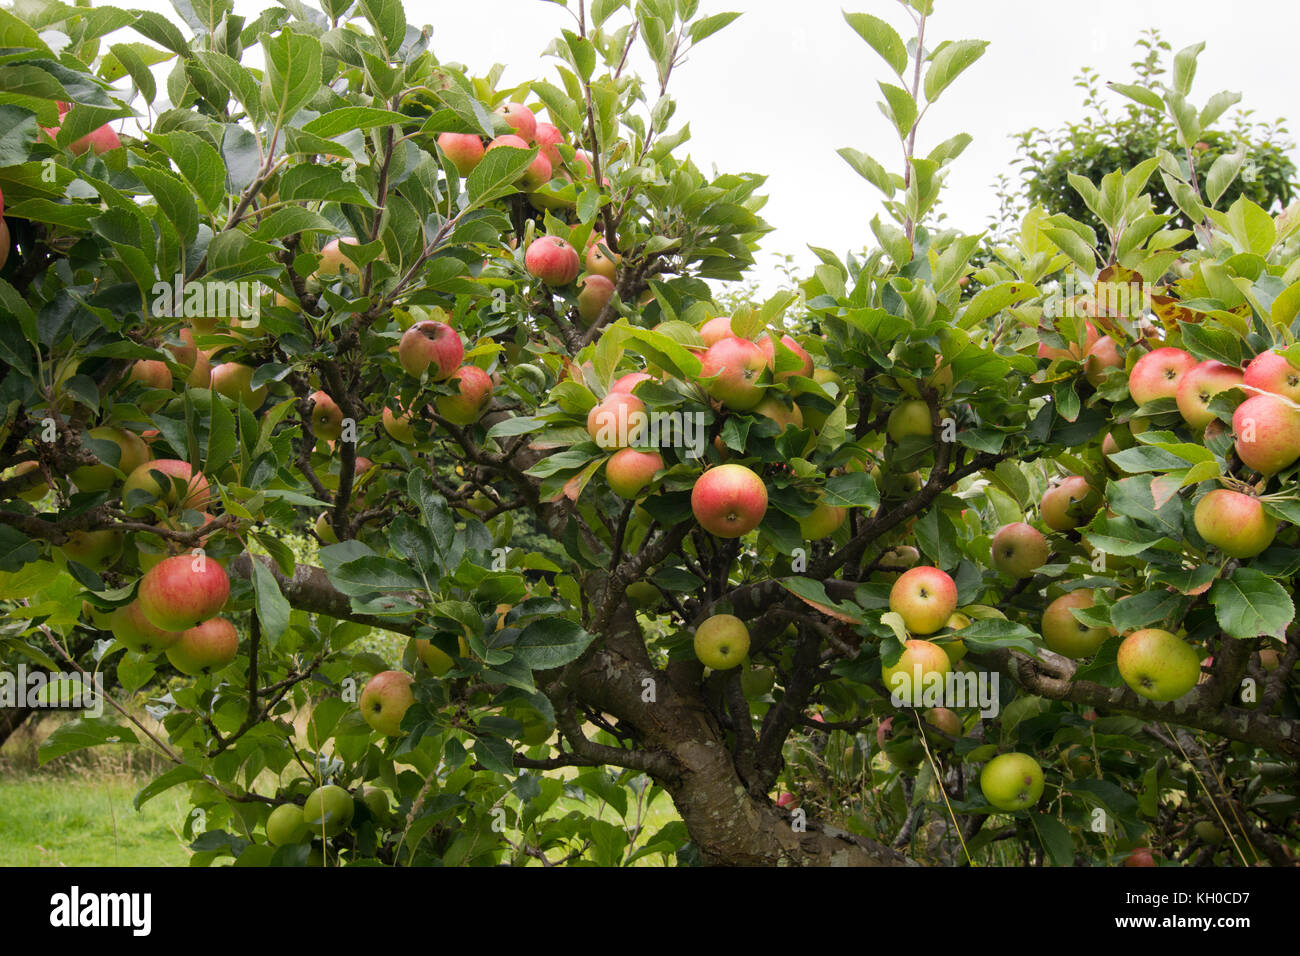 Family tree rare variety eating apples Stock Photo